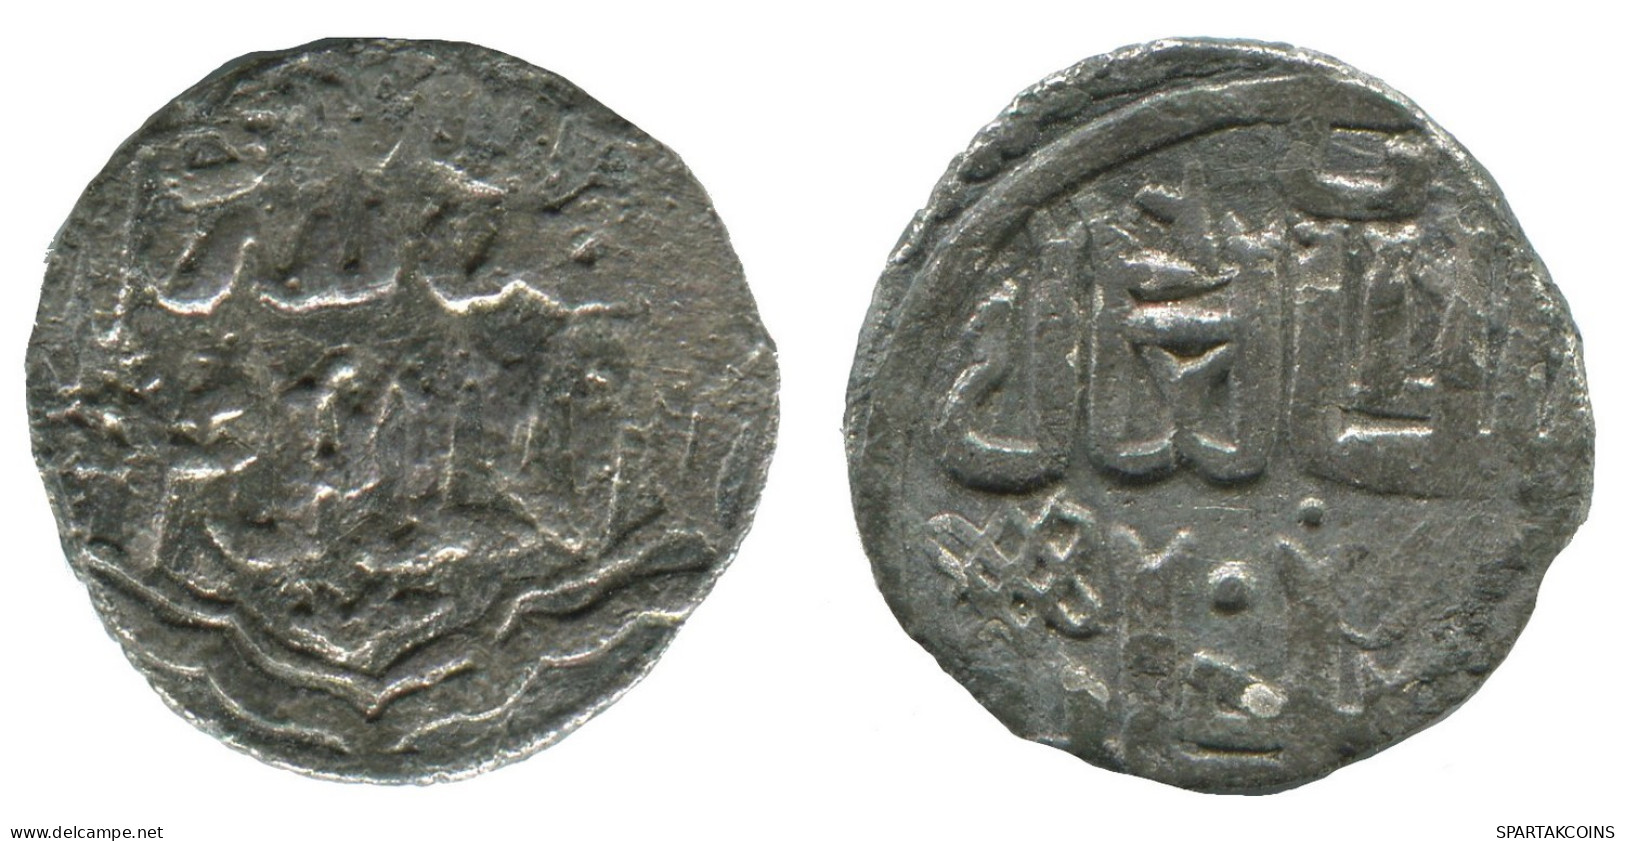 GOLDEN HORDE Silver Dirham Medieval Islamic Coin 1.4g/16mm #NNN2023.8.D.A - Islamische Münzen